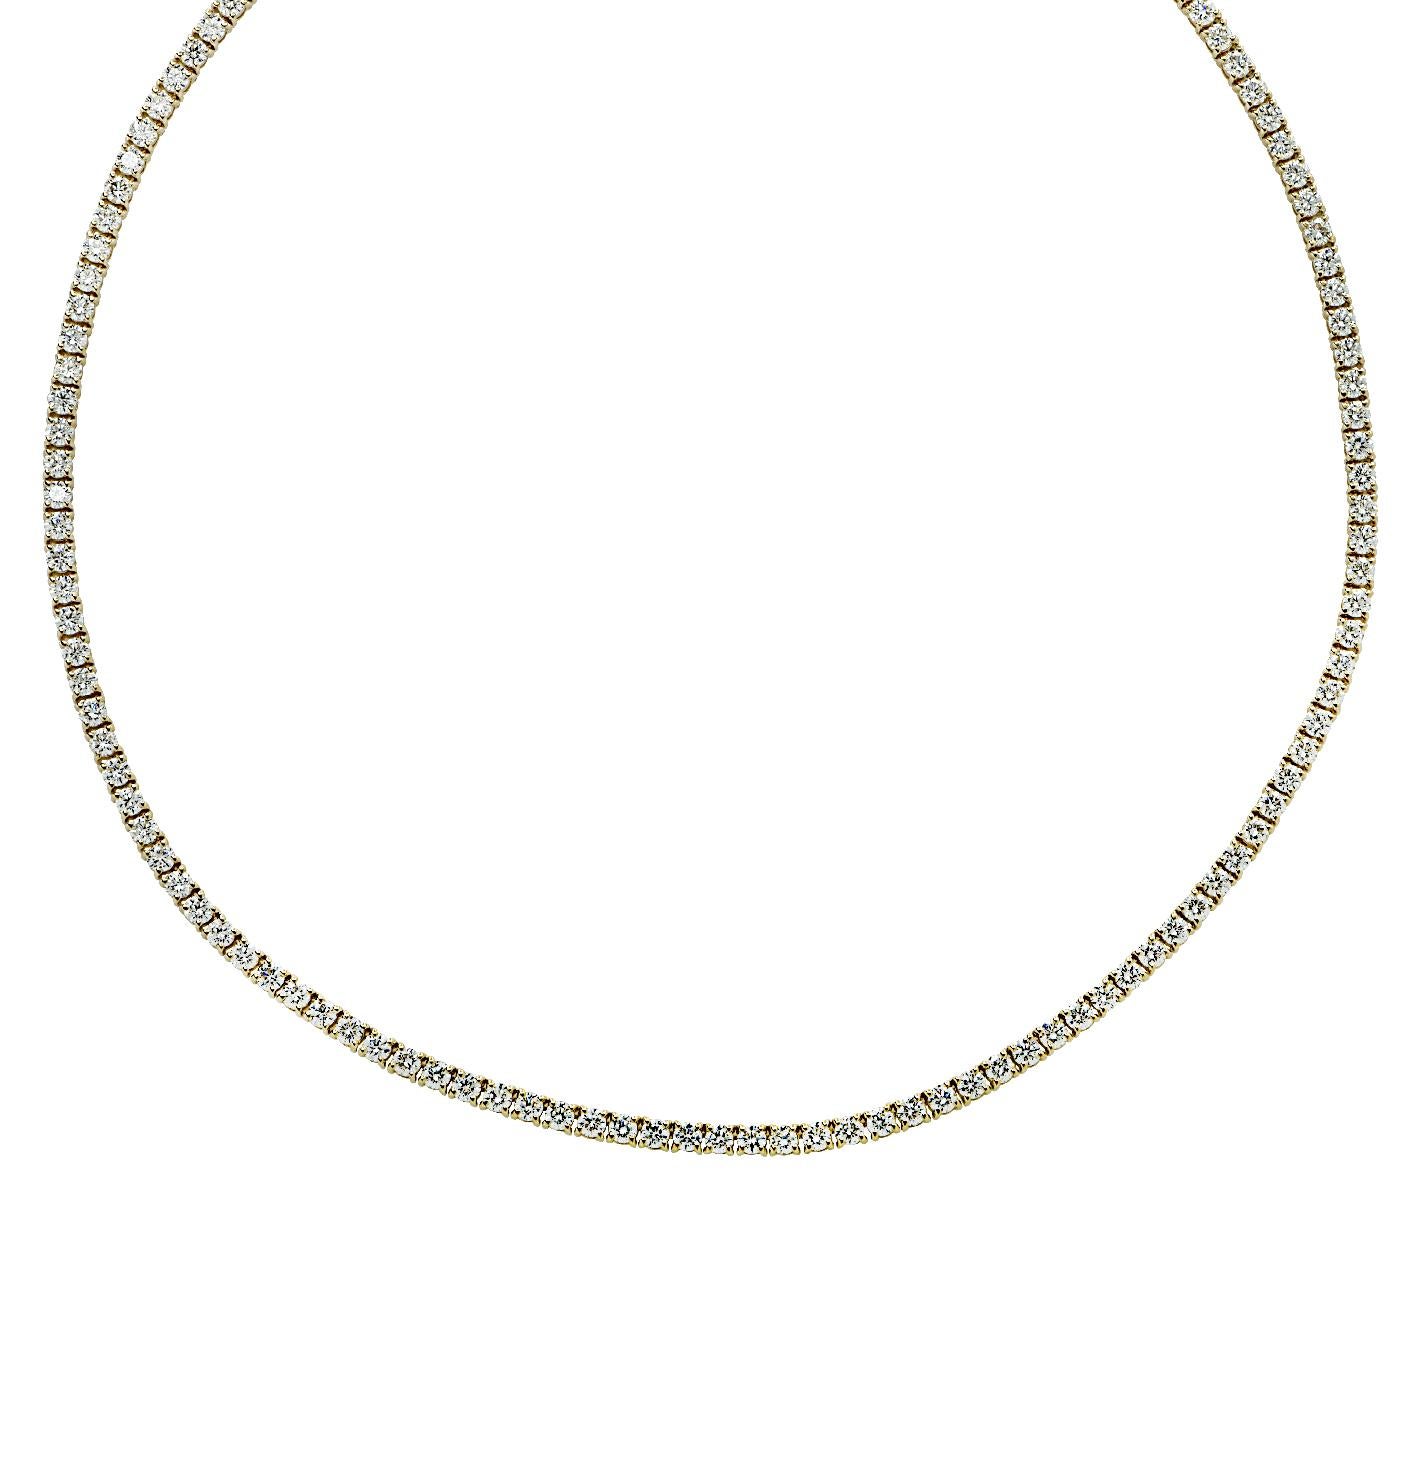 Vivid Diamonds 14.60 Carat Diamond Tennis Necklace In New Condition For Sale In Miami, FL